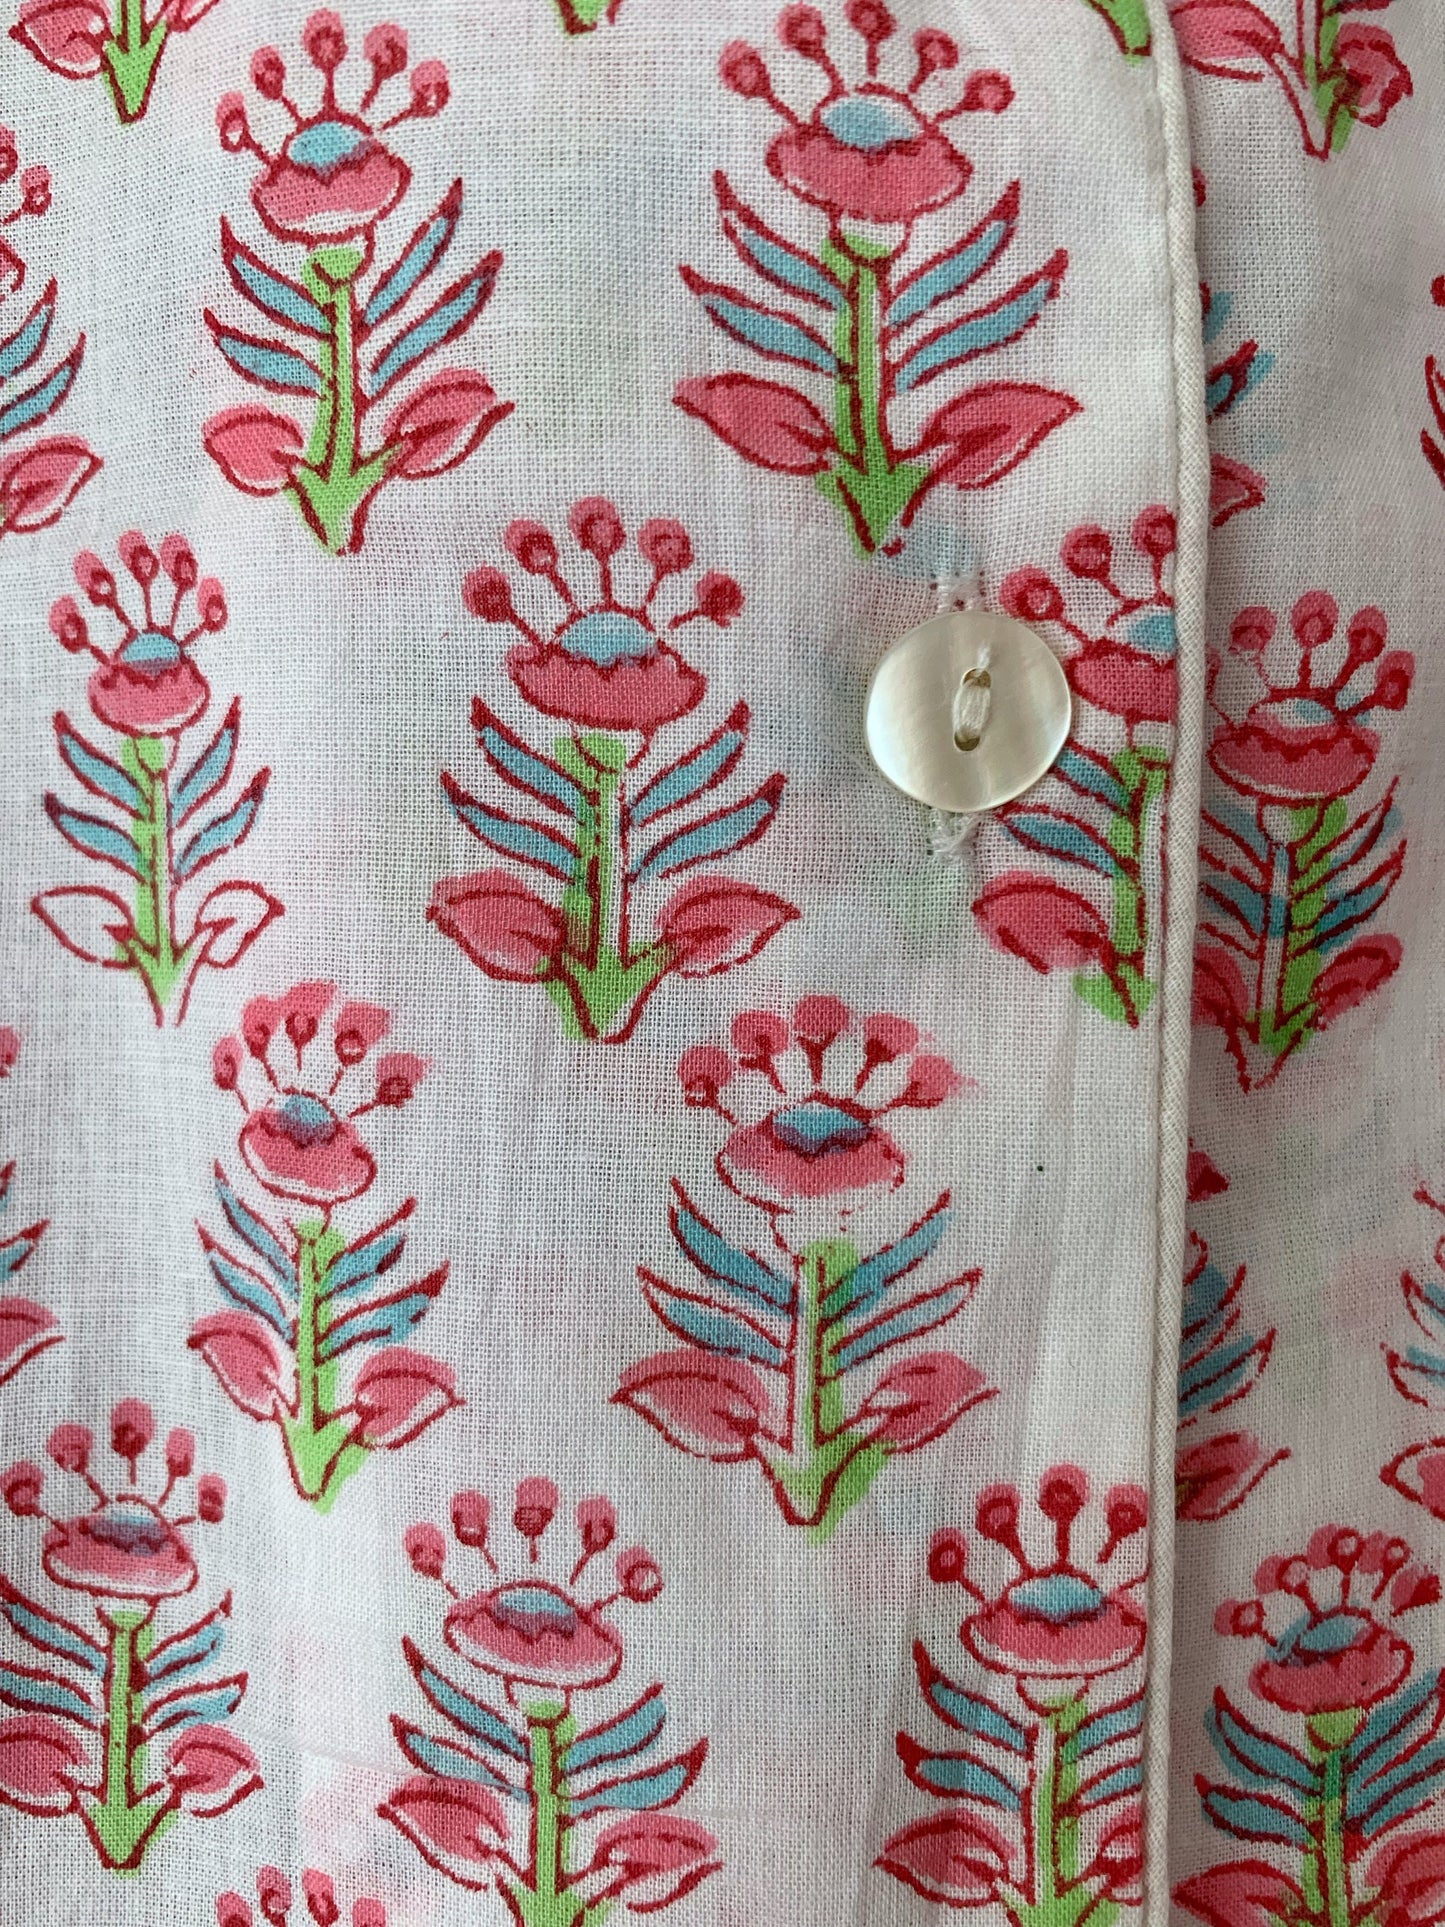 SET regalo · Camisón manga larga & zapatillas a juego · Algodón puro estampado block print artesanal en India · Blanco flores rosa